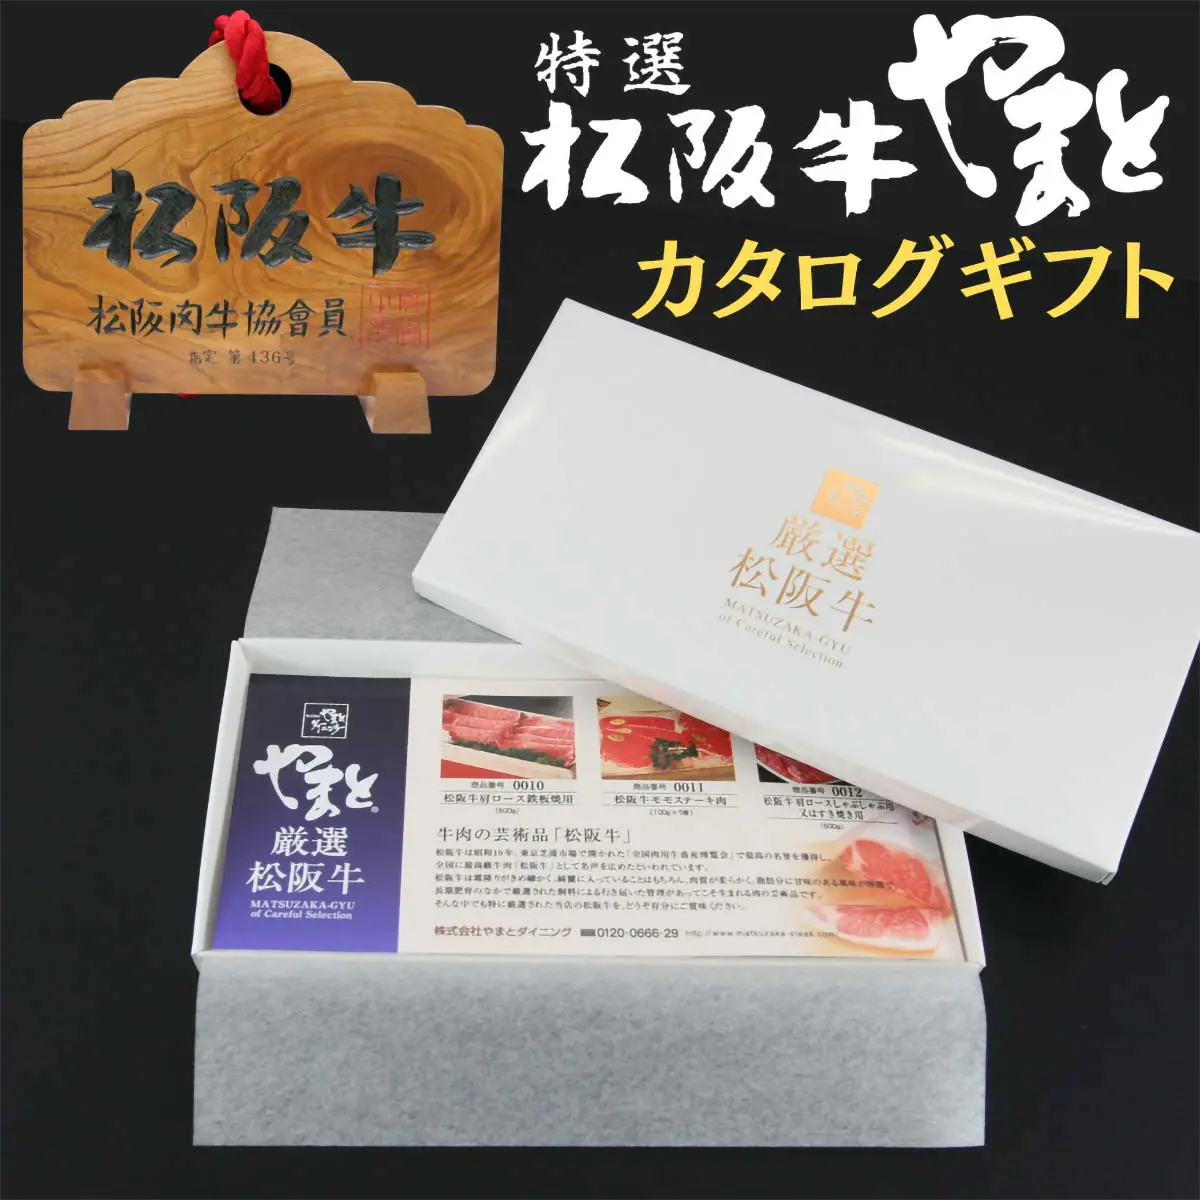 【結婚祝い】松阪牛お肉のギフト券Aタイプ